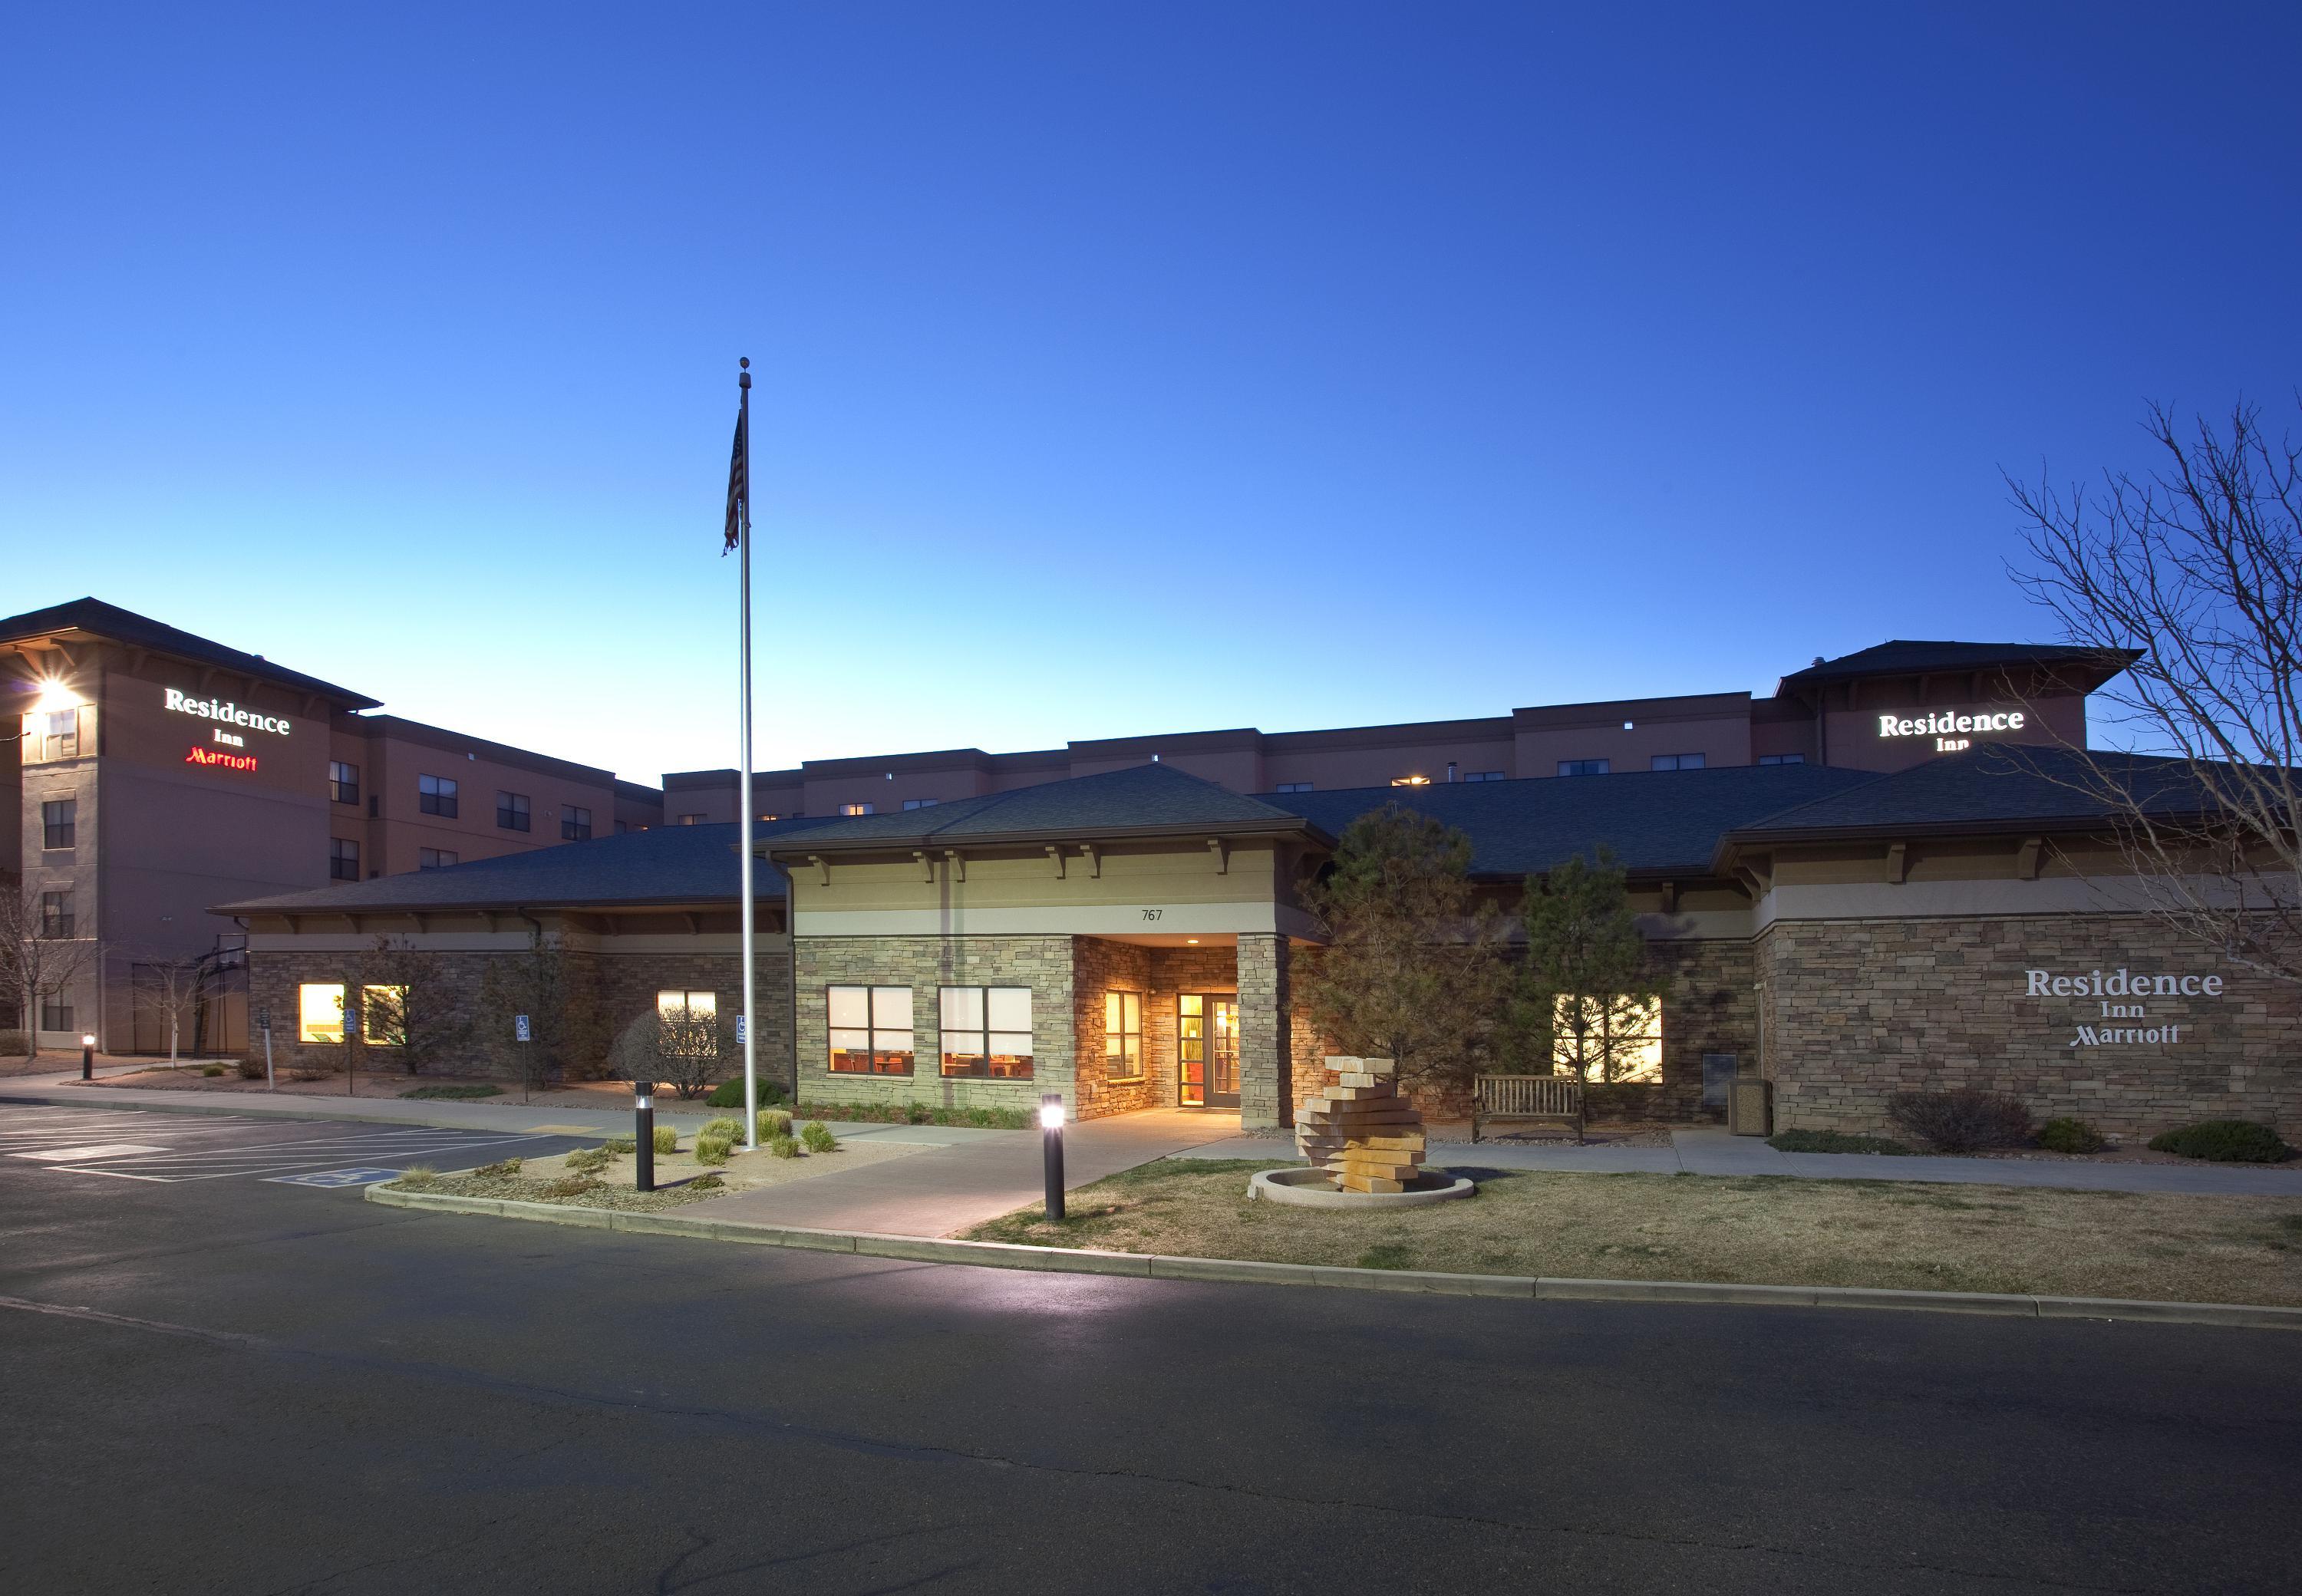 Photo of Residence Inn Grand Junction, Grand Junction, CO